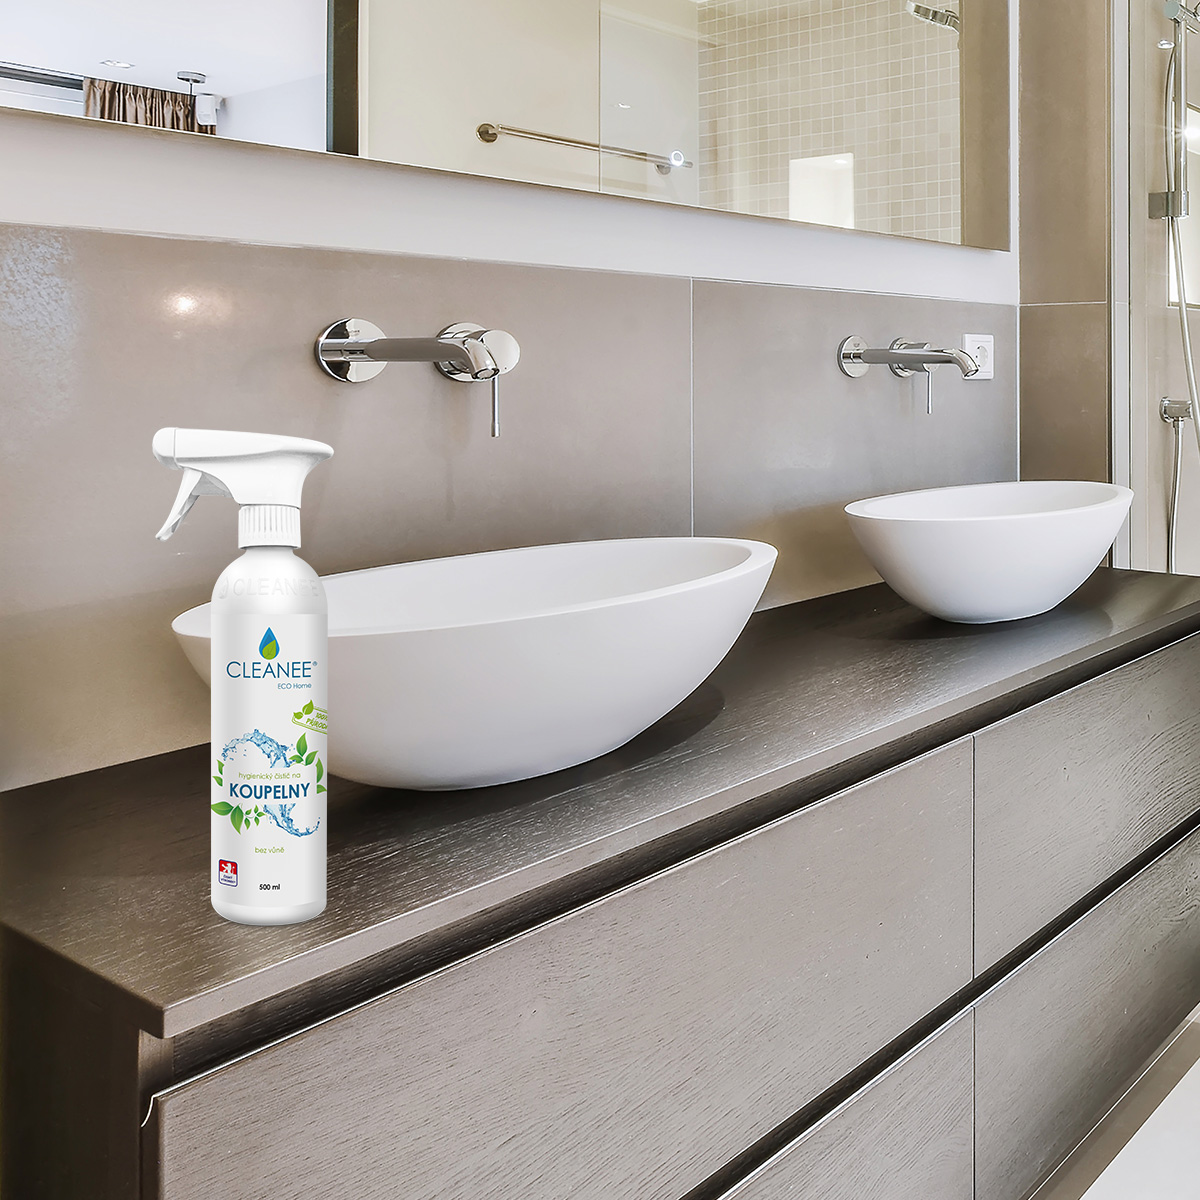 Přírodní čistití prostředek na koupelny s dlouhodobým hygienickým účinkem.